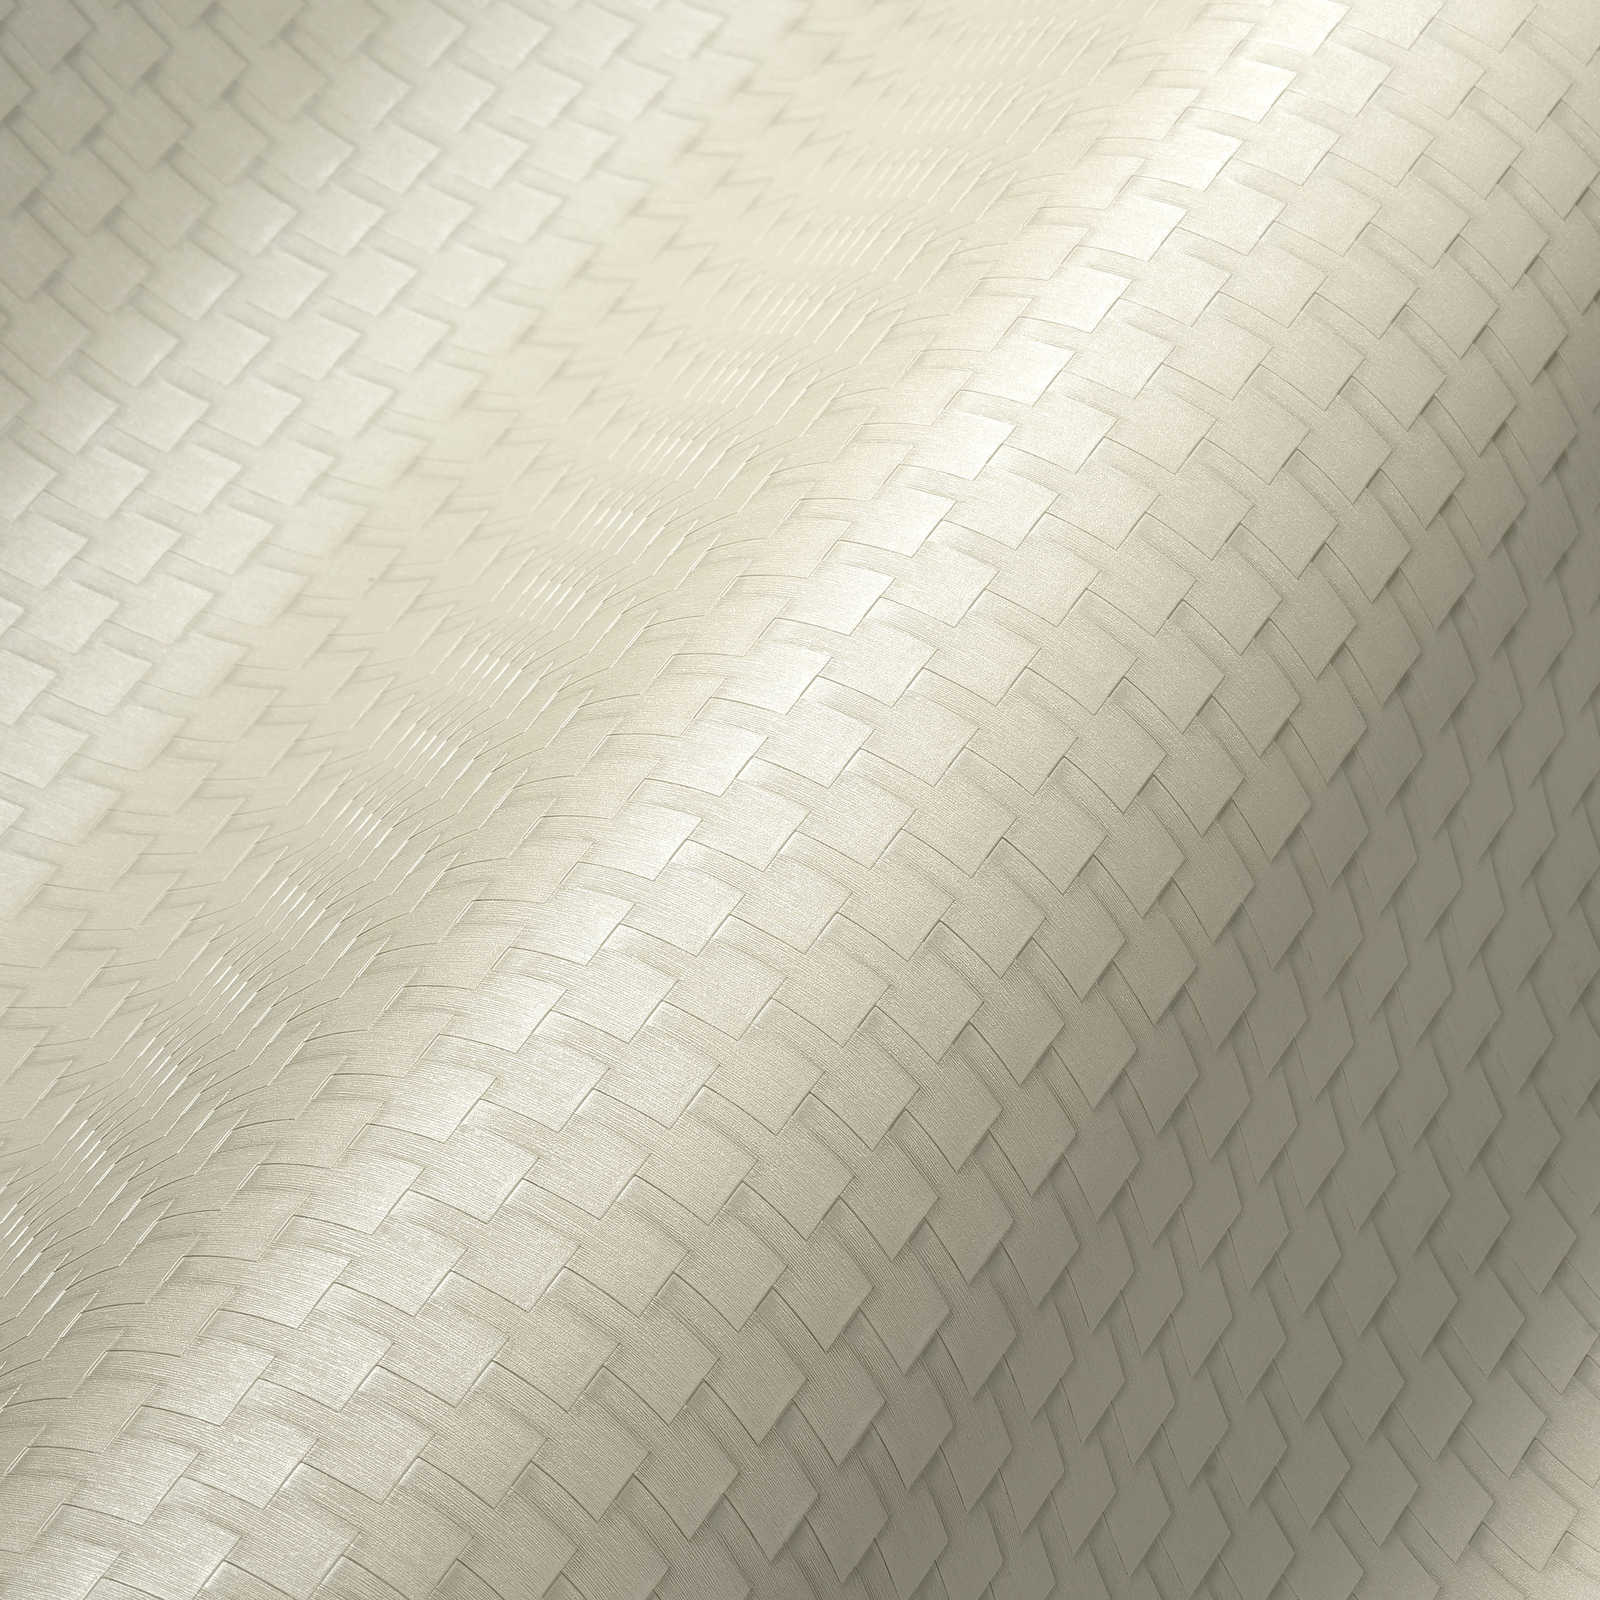             Gemusterte Tapete mit Facetten-Design und 3D-Effekt – Weiß, Grau, Silber
        